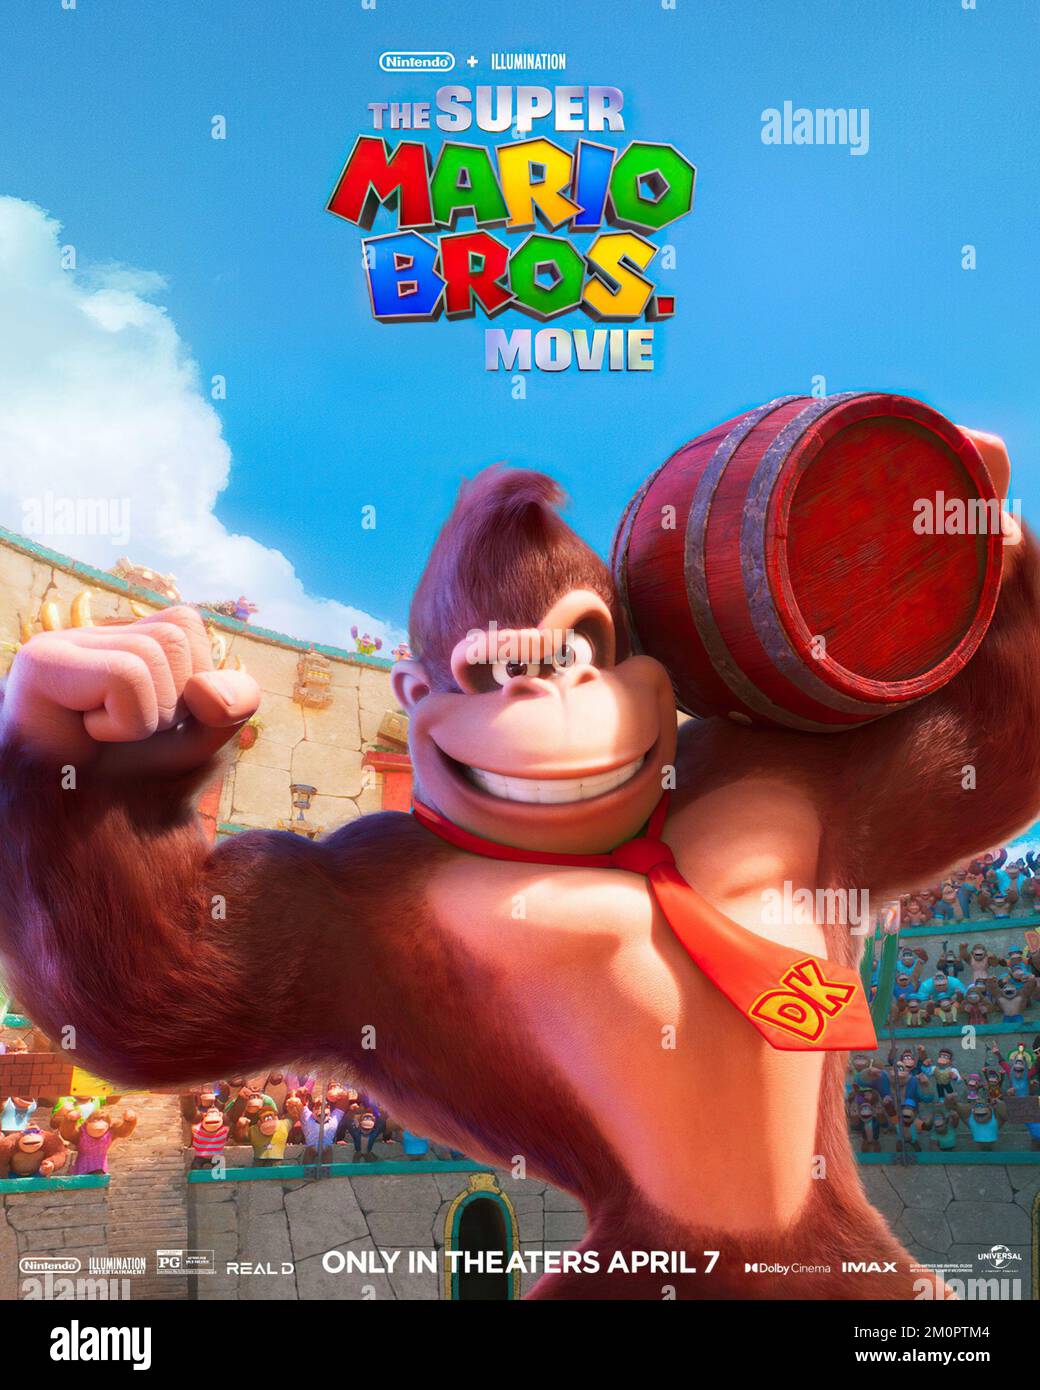 Super Mario Bros.: O Filme divulga pôster de Donkey Kong